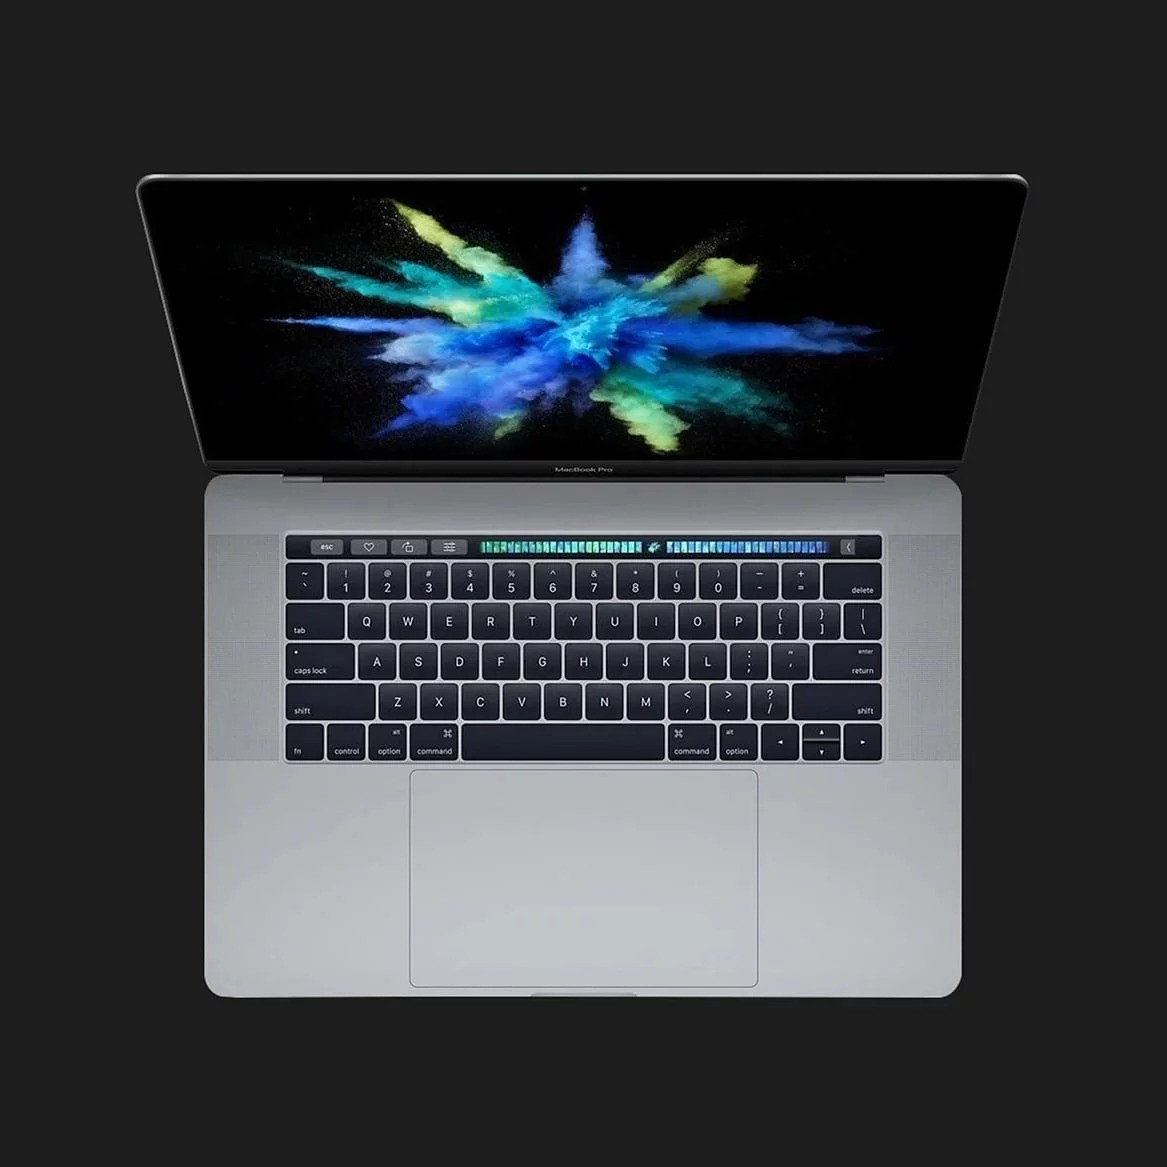 б/у Apple MacBook Pro 15, 2017 (512GB) (MPTT2) (Відмінний стан)